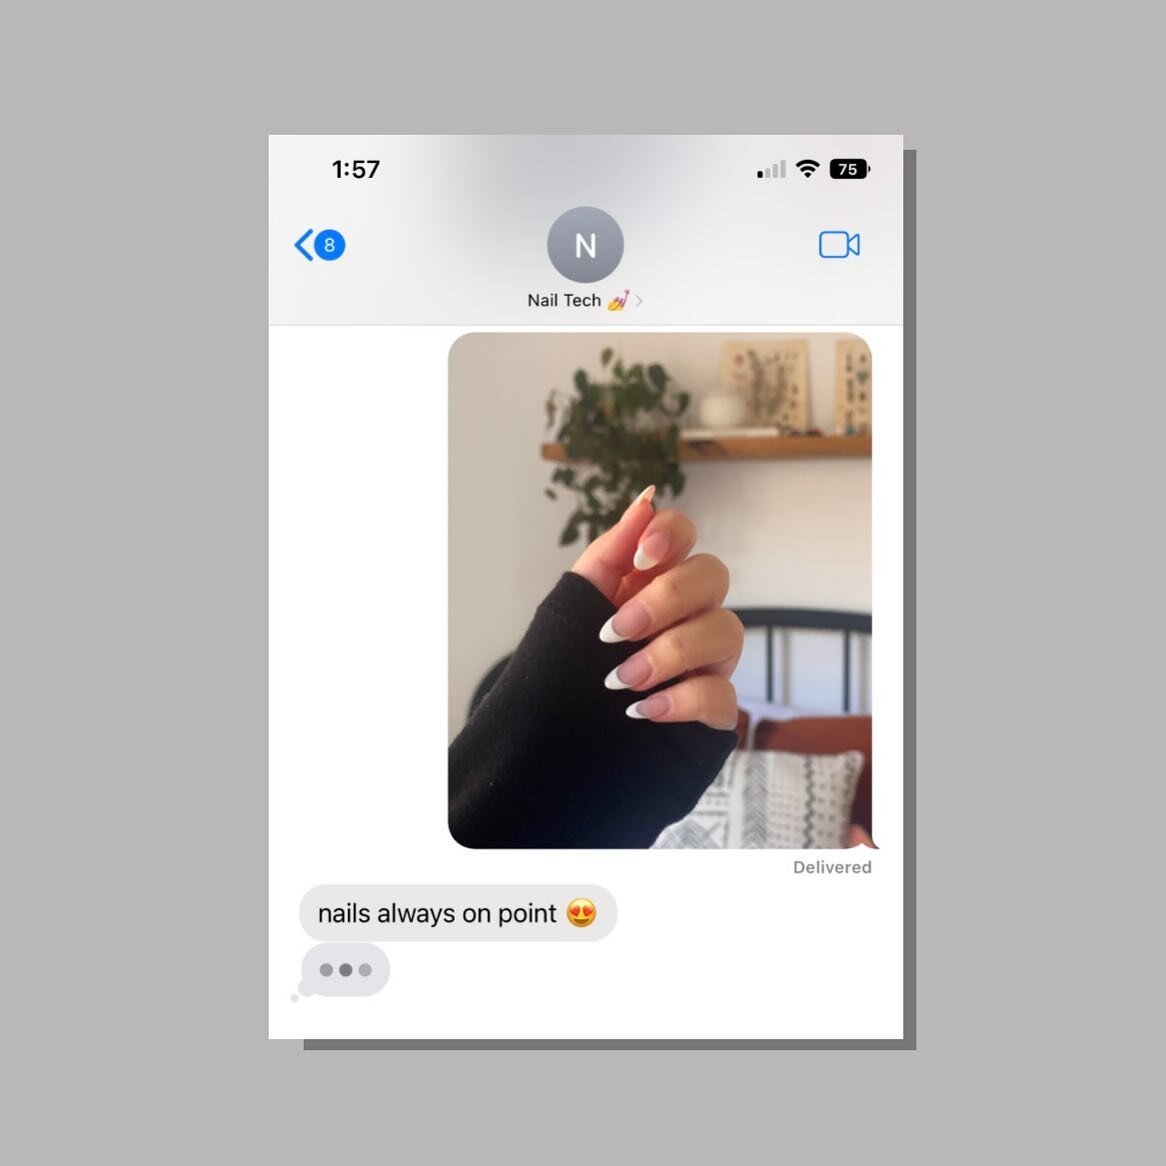 Hey Siri, play Nail Tech by Jack Harlow. 💅💕

⠀⠀⠀⠀⠀⠀⠀⠀⠀⠀
⠀⠀⠀⠀⠀⠀⠀⠀⠀⠀
⠀⠀⠀⠀⠀⠀⠀⠀⠀⠀
⠀⠀⠀⠀⠀⠀⠀⠀⠀⠀
⠀⠀⠀⠀⠀⠀⠀⠀⠀⠀
⠀⠀⠀⠀⠀⠀⠀⠀⠀⠀

#SugarPolishAthens #sugarpolish #nails #manicure #athensga #sns #snsnails #nailsofinstagram #opi #gelpolish #nailstyles #nailartist #abs